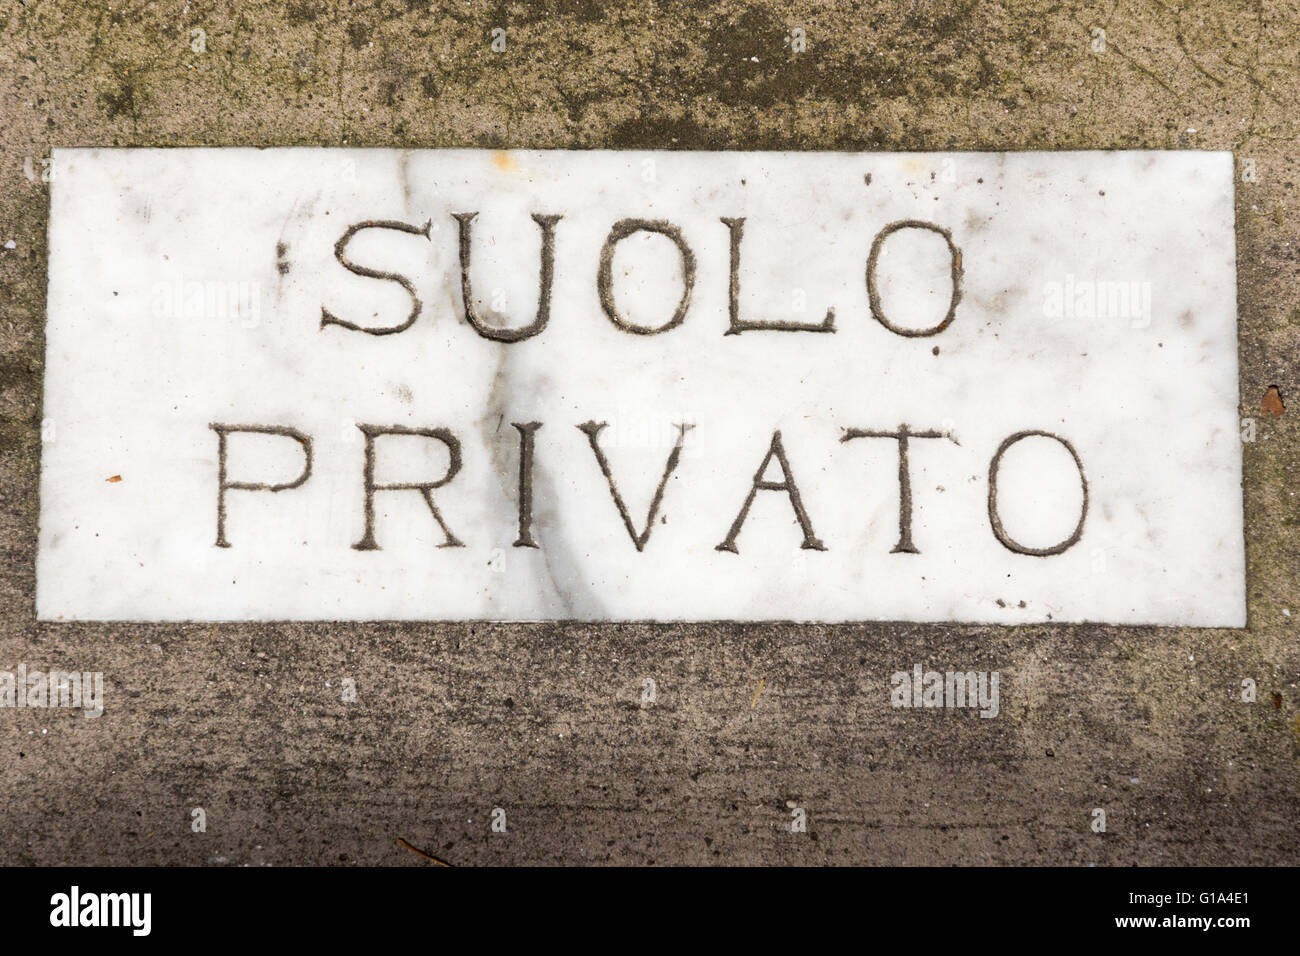 Marmo inciso nel pavimento con la scritta Suolo privato in italiano che significa 'Proprietà privata' fuori di una casa a Sorrento, Italia Foto Stock